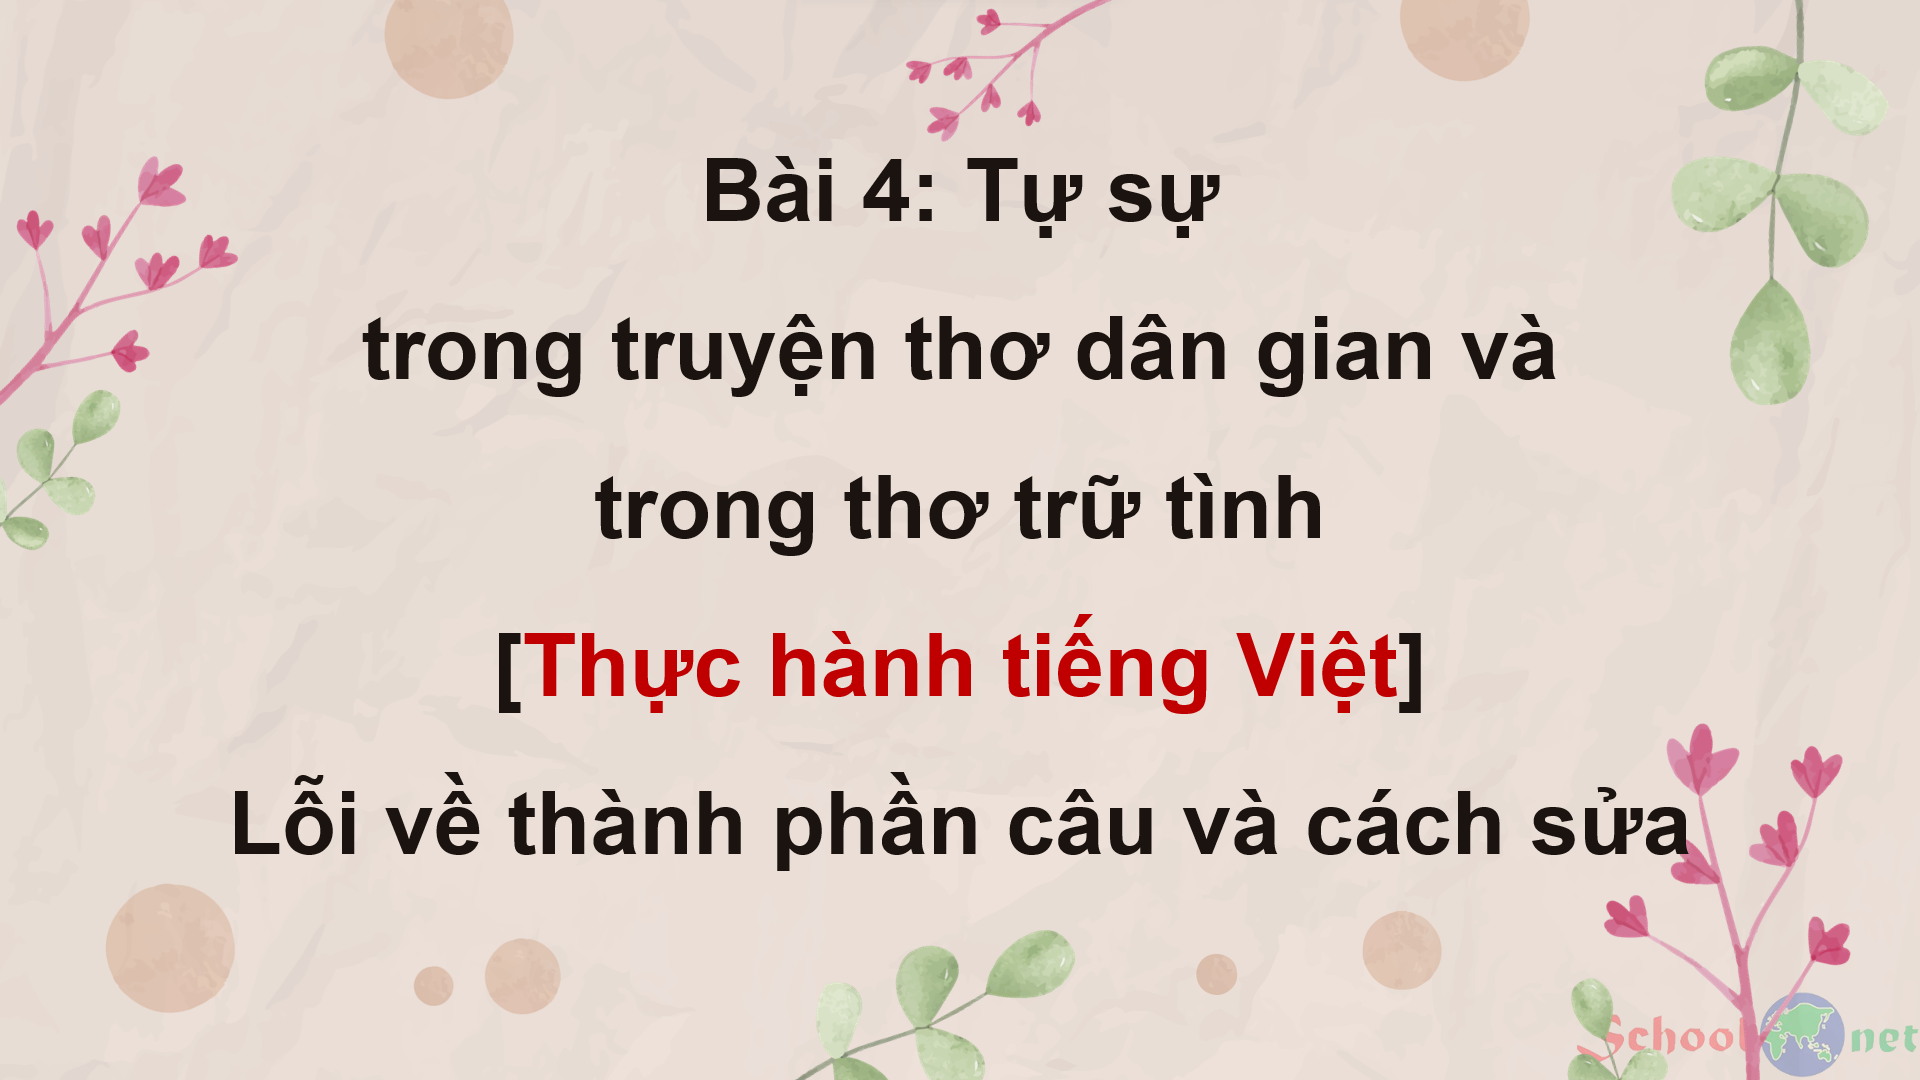 Bài 4: Thực hành tiếng Việt: Lỗi về thành phần câu và cách sửa - Bộ sách Kết nối tri thức với cuộc sống